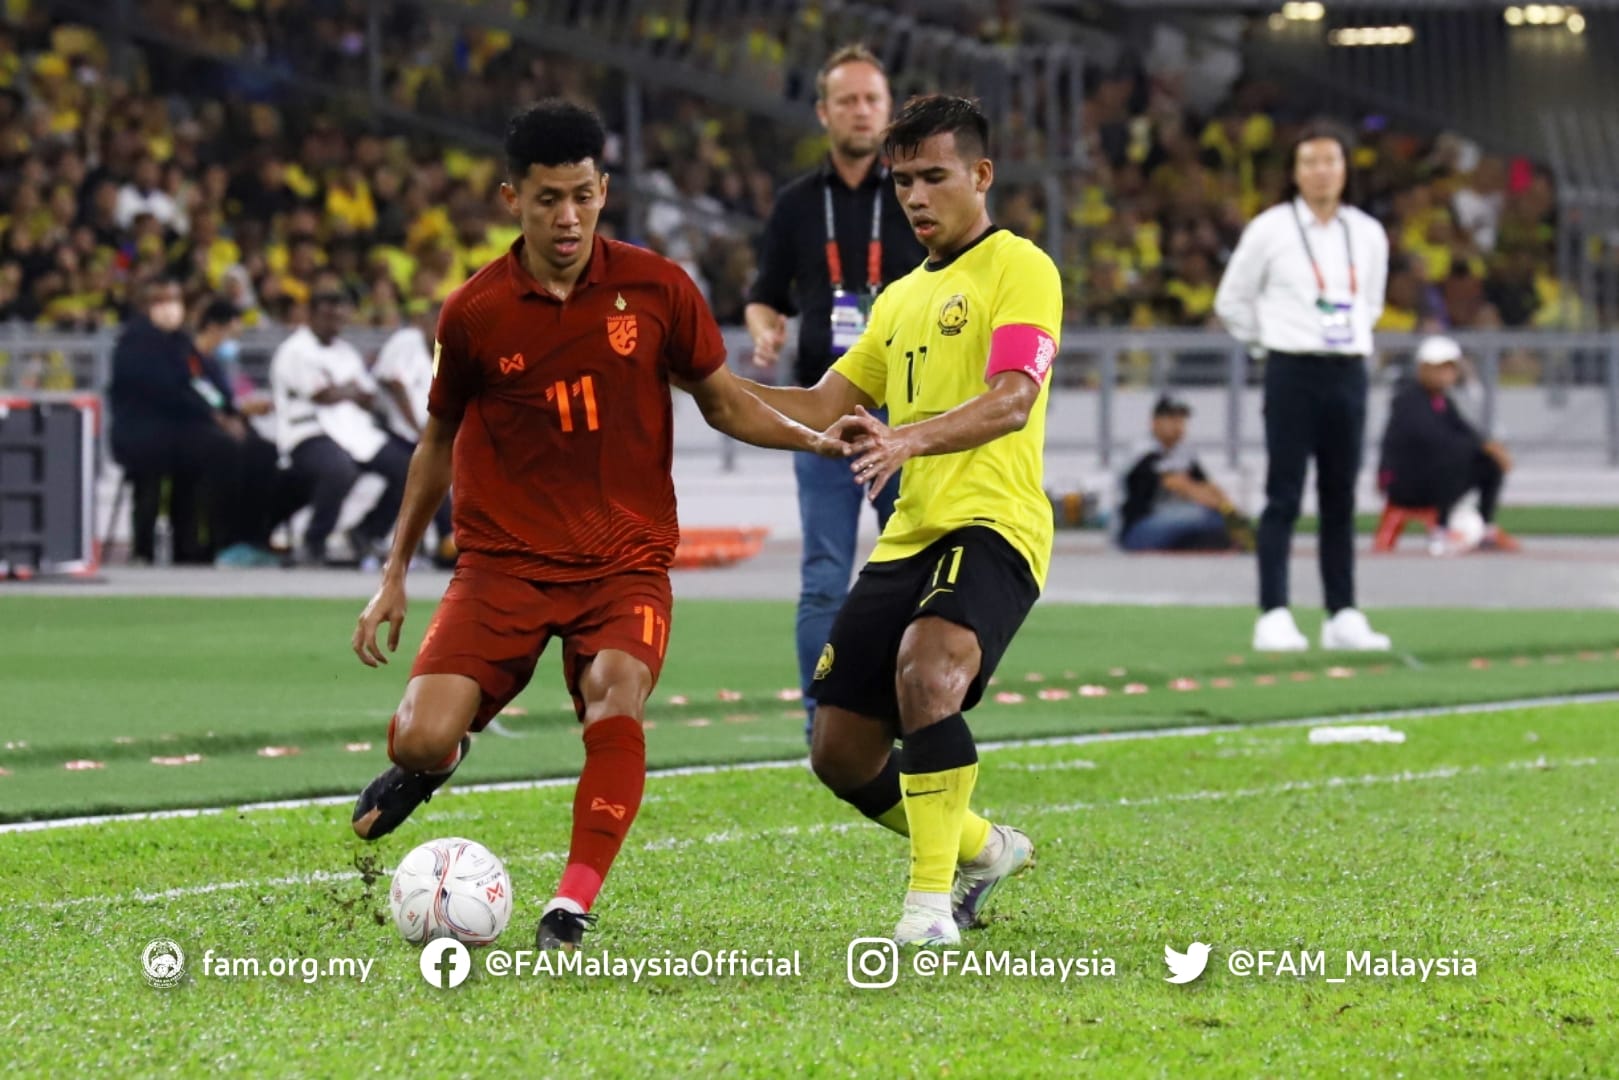 Malaysia chủ động pressing tầm cao ngay từ sân nhà của các cầu thủ Thái Lan. Đội chủ nhà khiến Thái Lan buộc phải lùi sâu về phòng thủ ngay đầu trận.